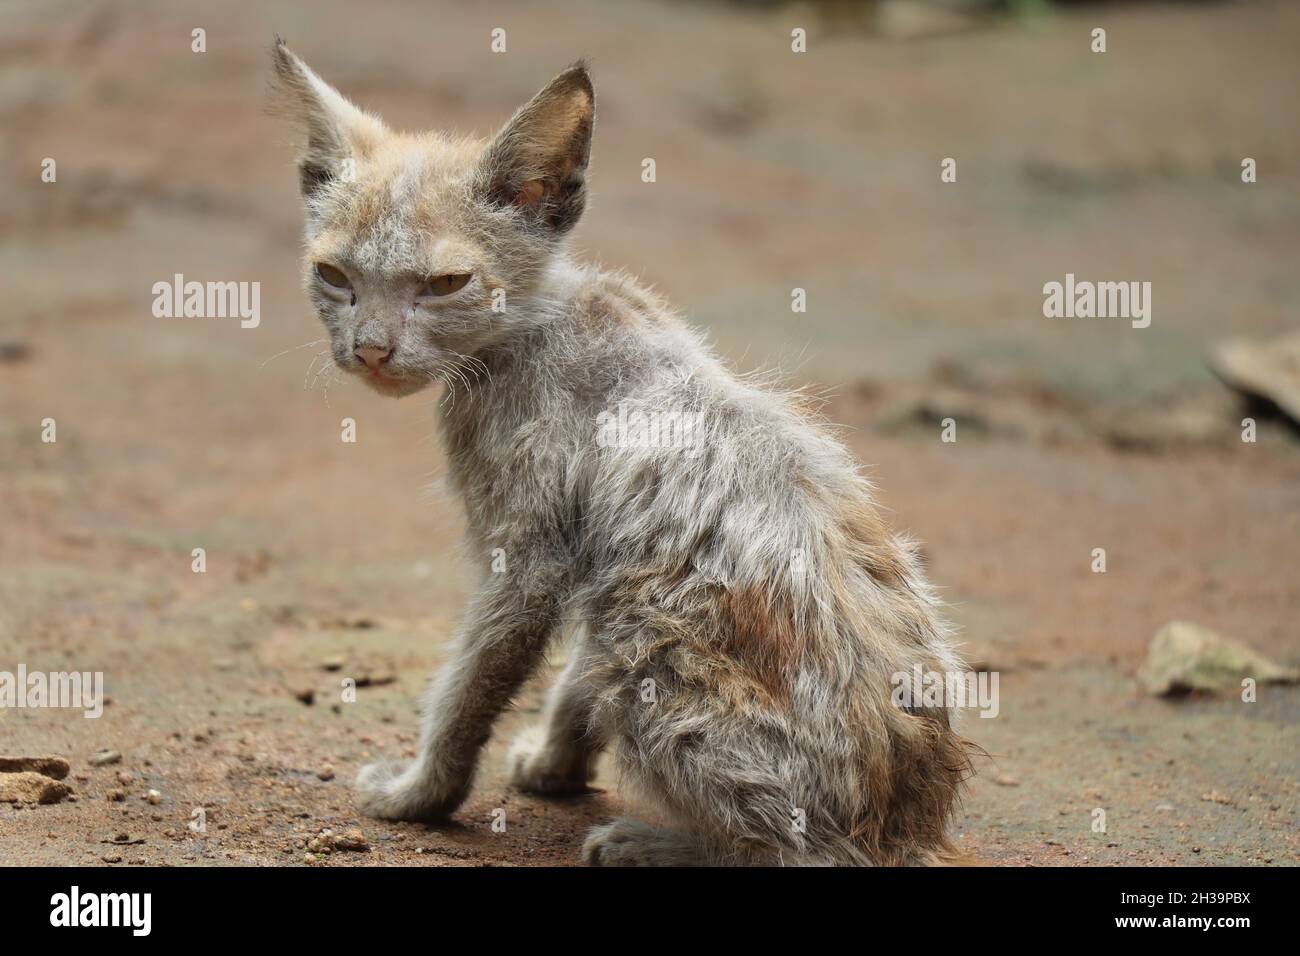 Petit chat avec peau infectée, Kitty avec perte de fourrure, maladies allergiques de peau chez les chats domestiques Banque D'Images